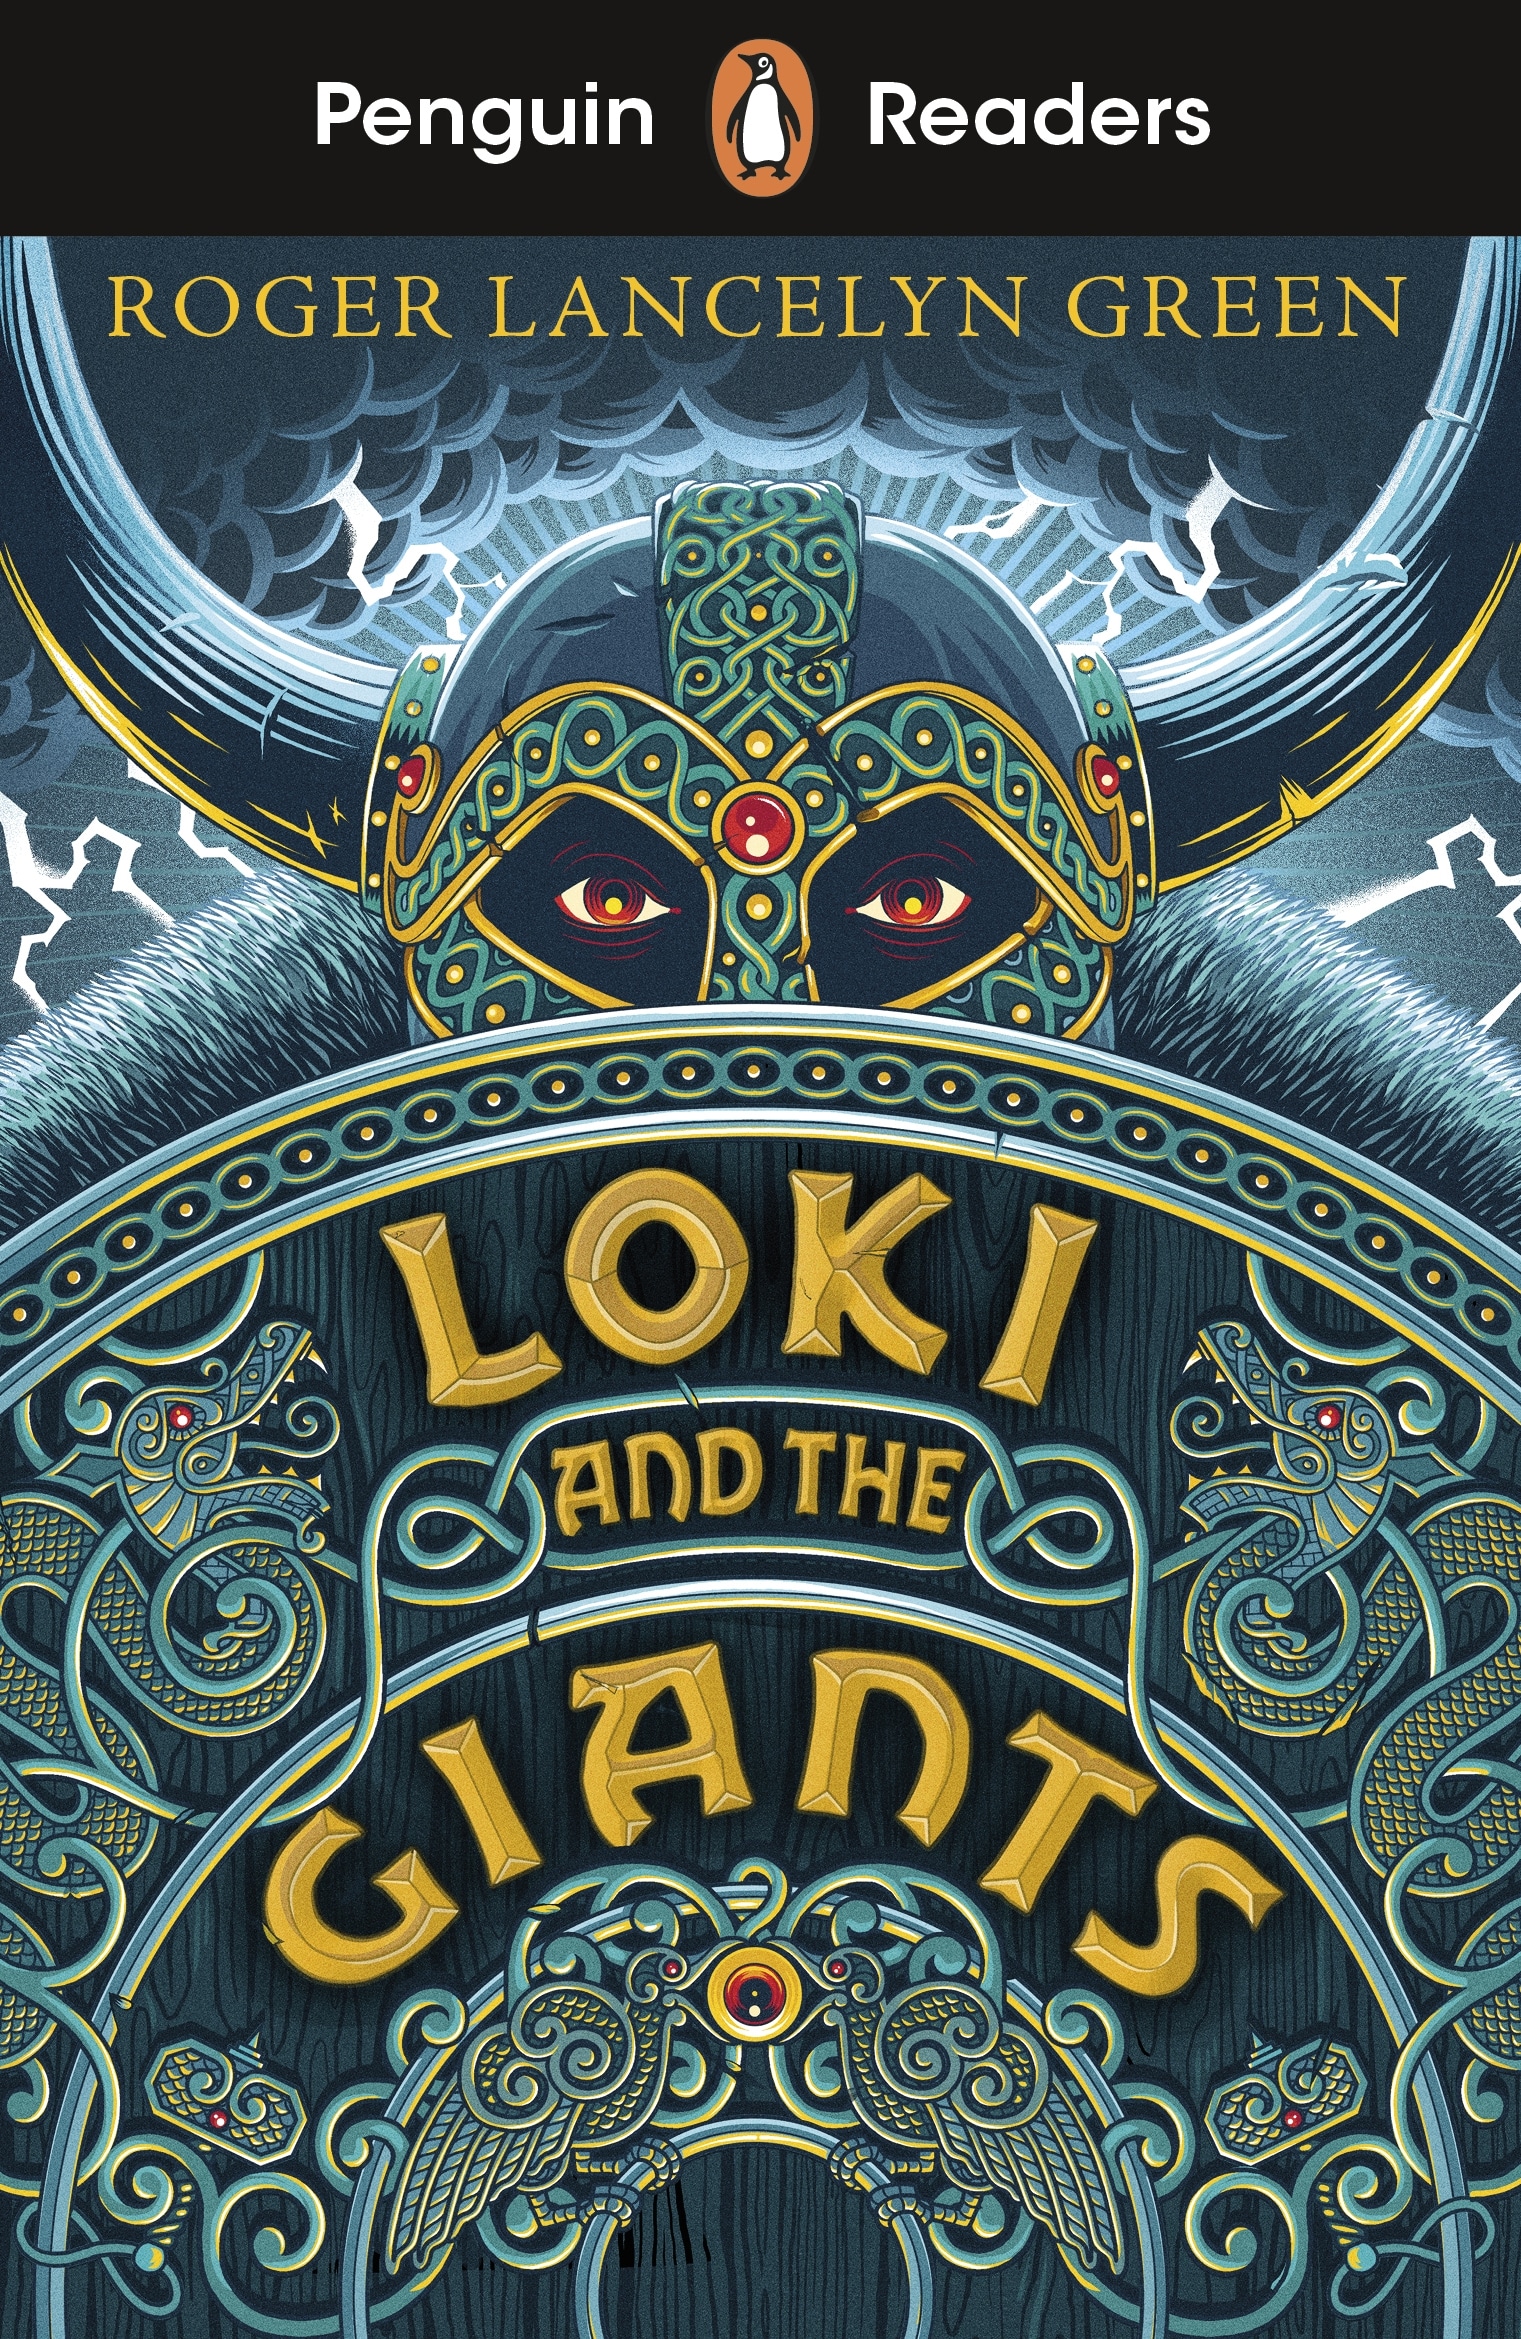 Book “Penguin Readers Starter Level: Loki and the Giants (ELT Graded Reader)” by Roger Lancelyn Green — November 5, 2020